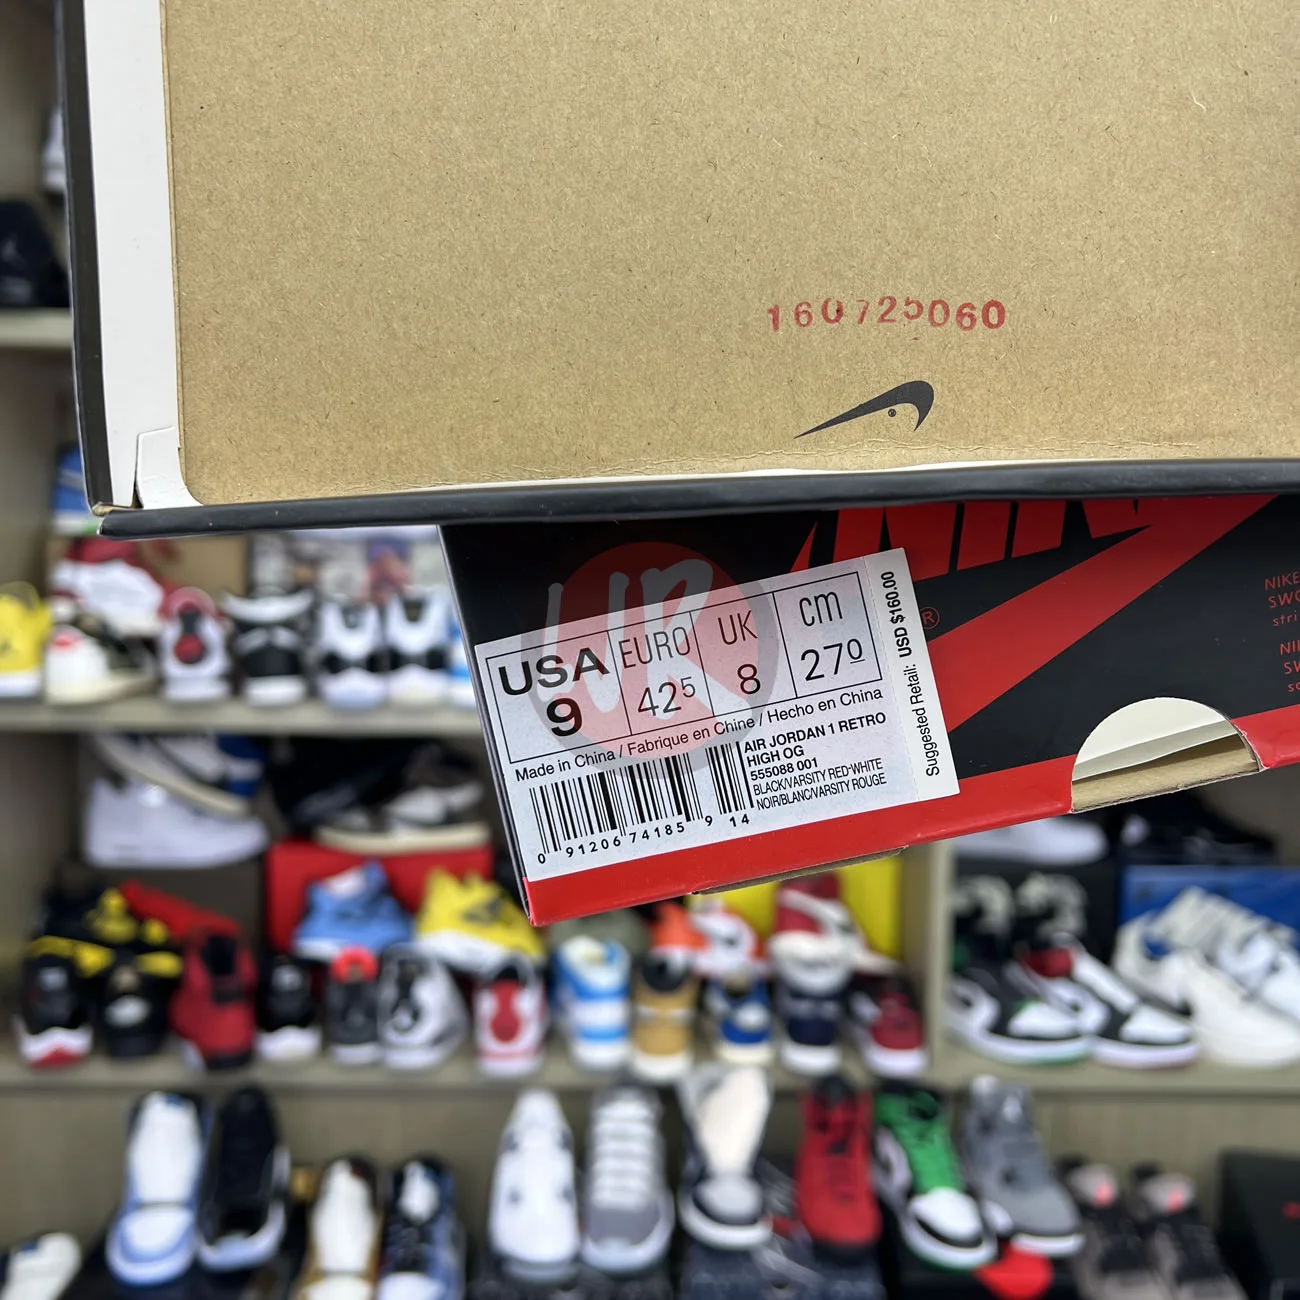 Air Jordan 1 Retro High Bred Banned 2016 555088 001 Ljr Sneakers (11) - bc-ljr.com